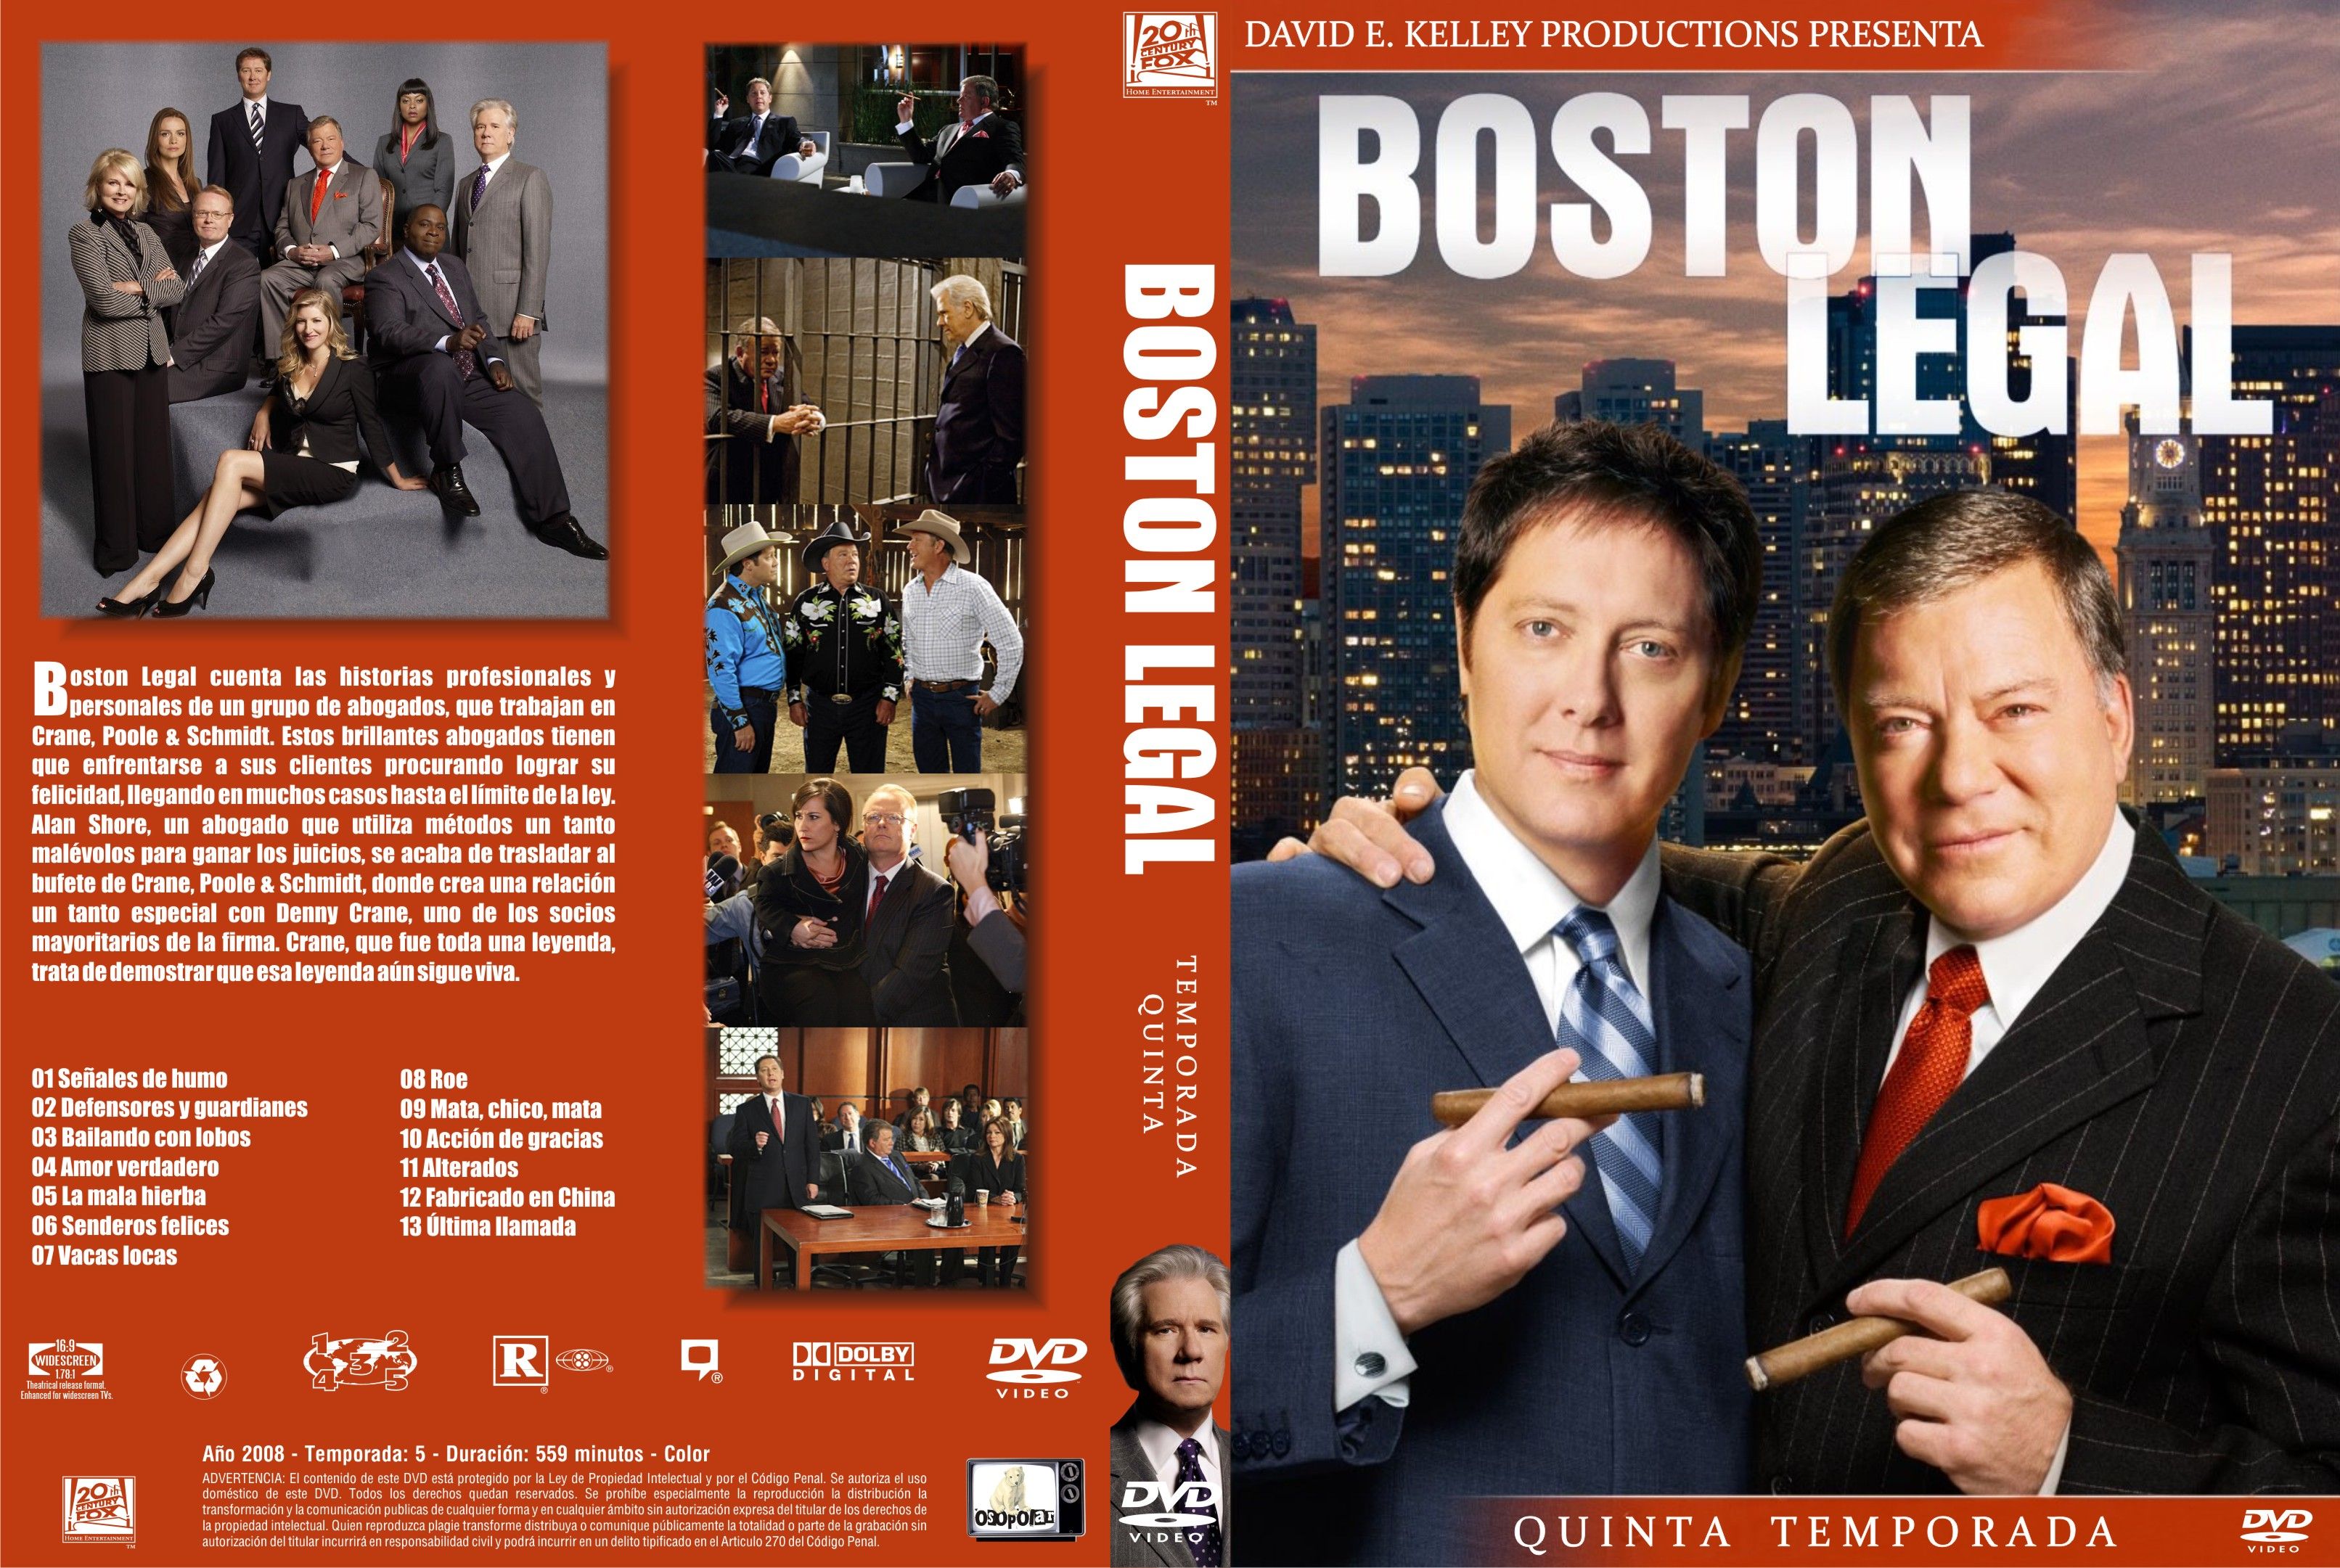 Covers Box Sk Boston Legal All Seasons Imdb Dl5 High Quality Dvd Blueray Movie